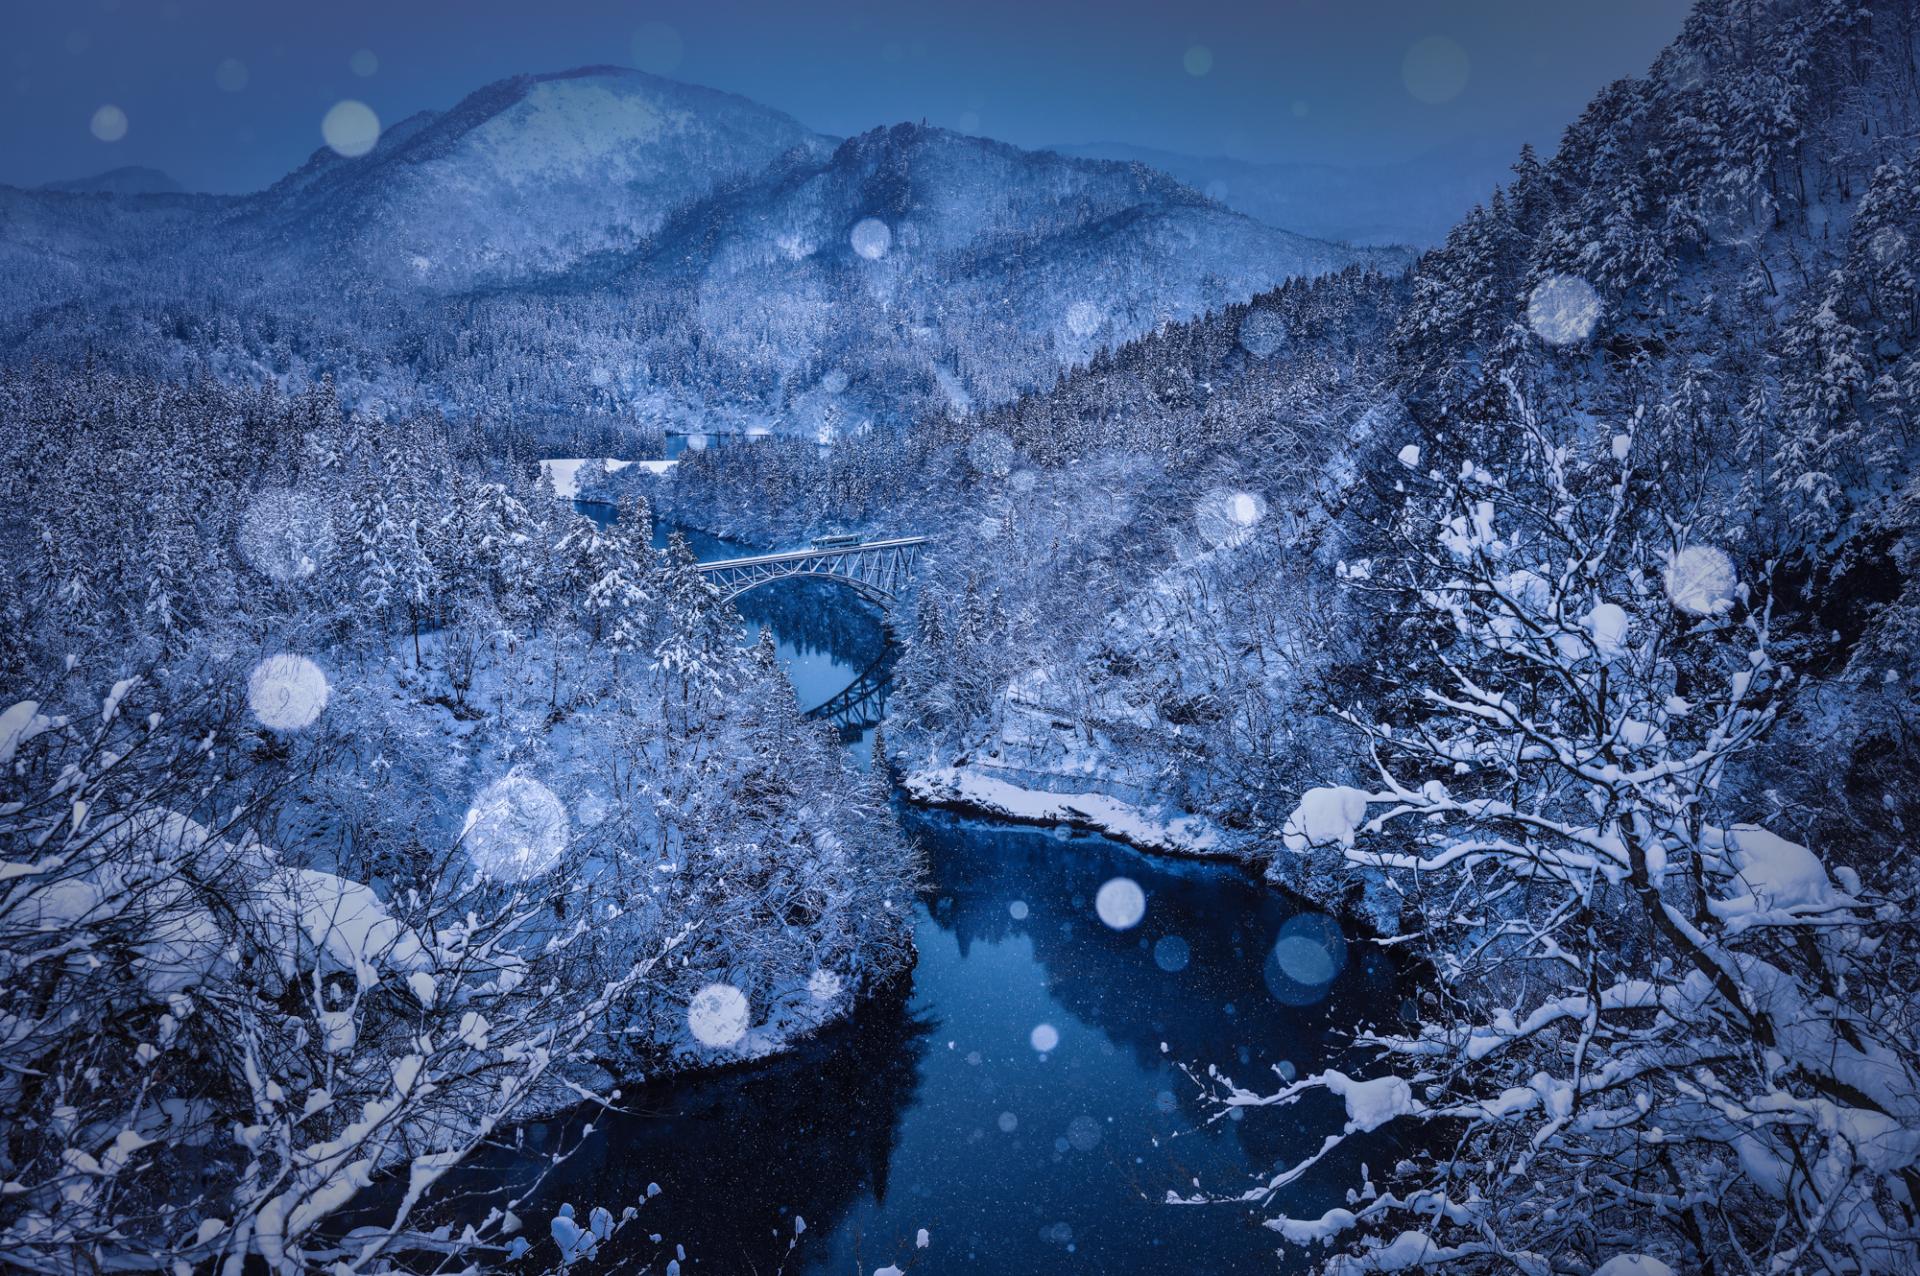 European Photography Awards Winner - Dreamy winter in japan